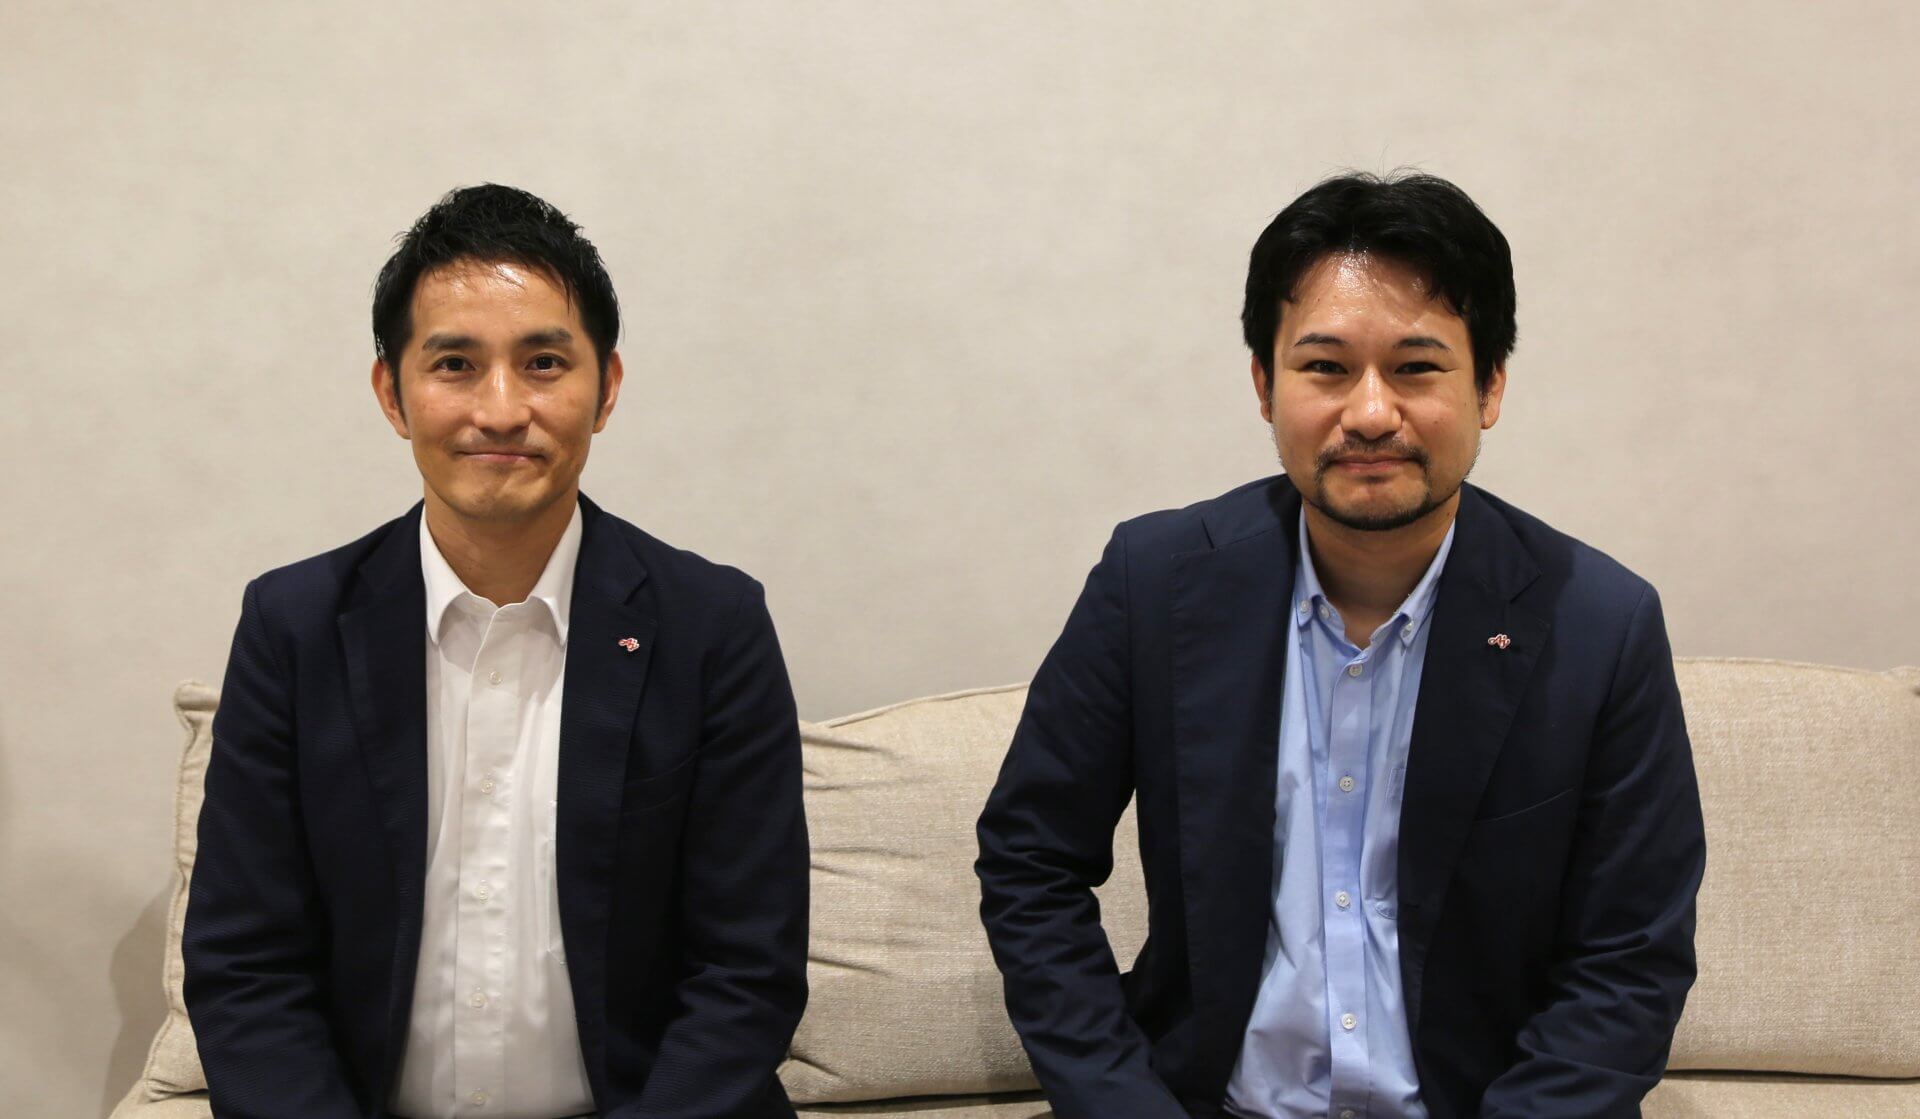 Mr. Takeuchi and Mr. Haruno